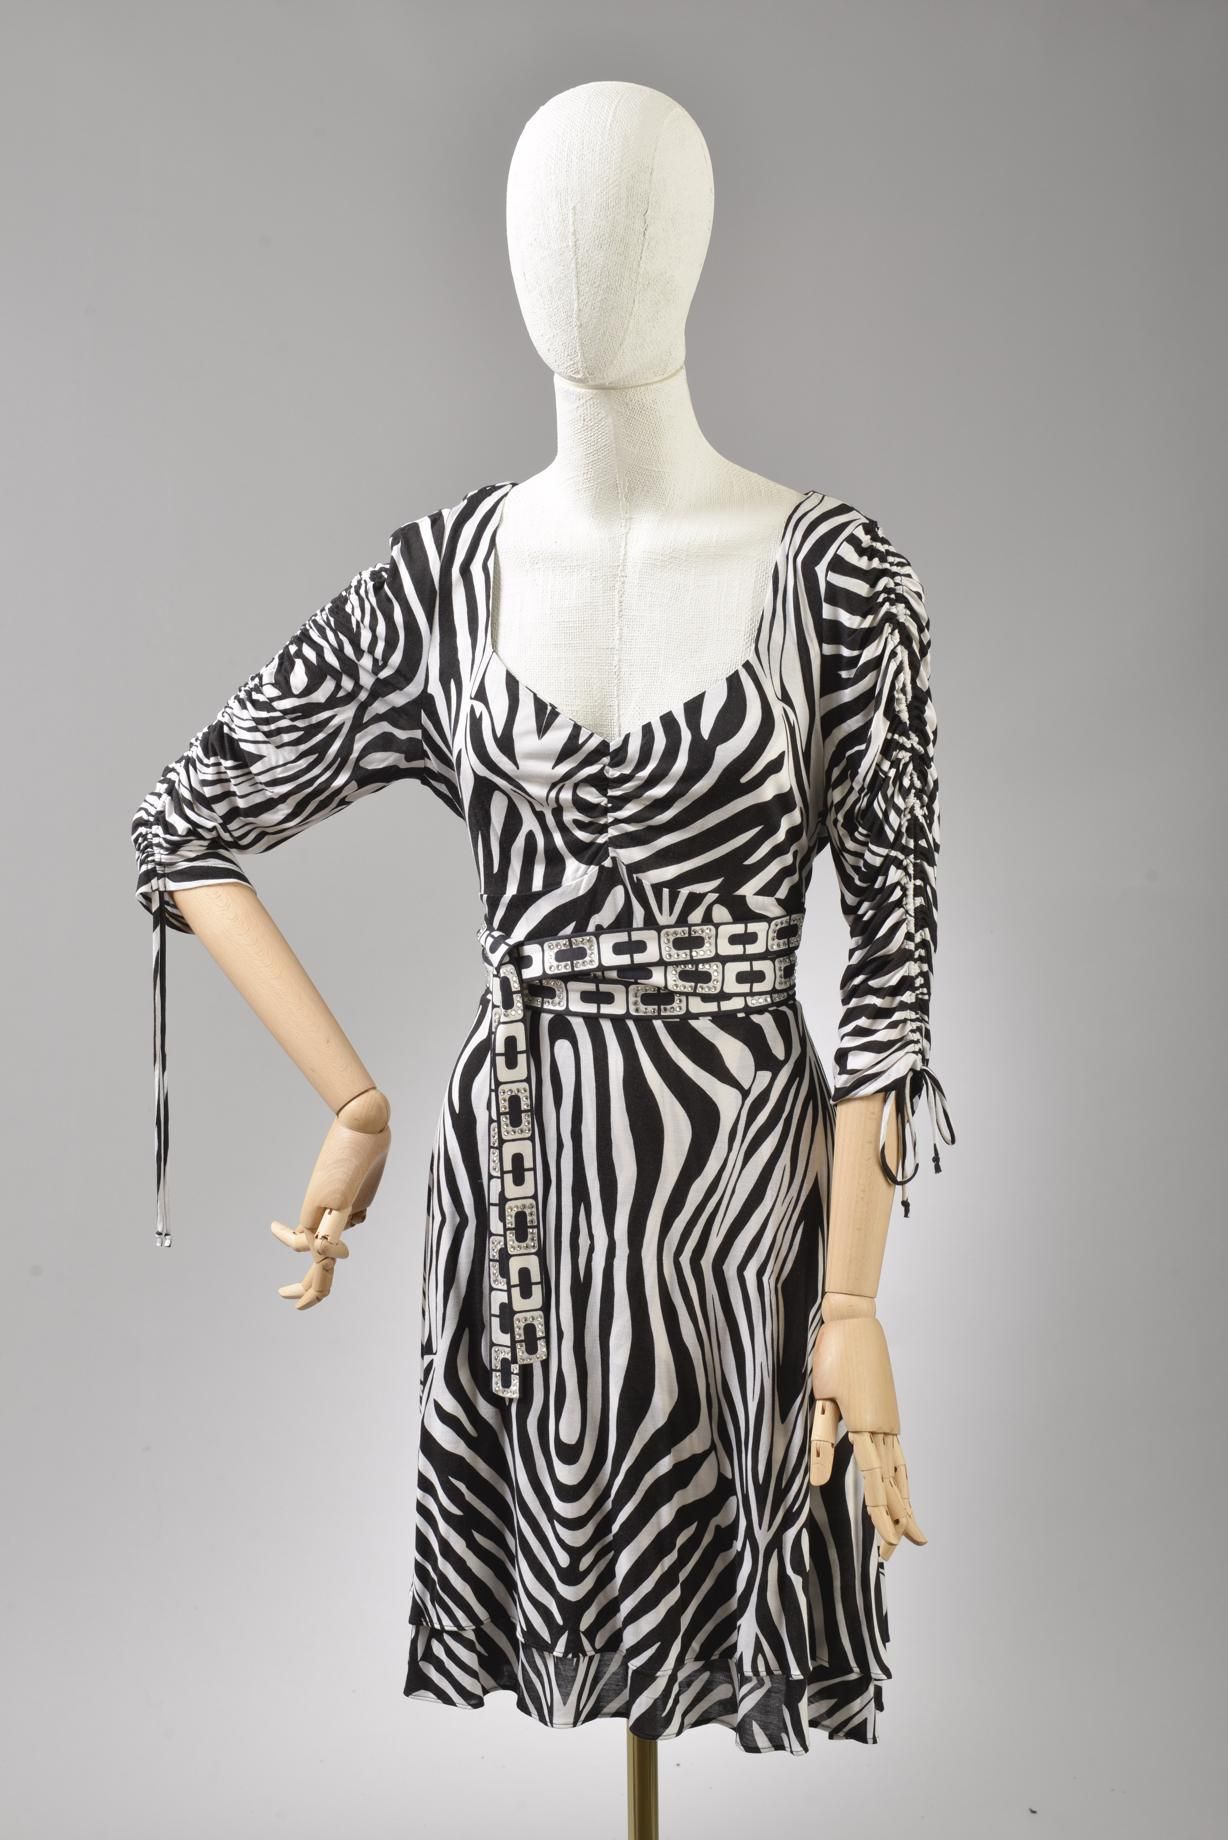 Null *尺寸0 DVF - Diane Von Fürstenberg

套装包括。

-丝绸和粘胶针织连衣裙，"DVF Hollis "型号，有 "Tet&hellip;